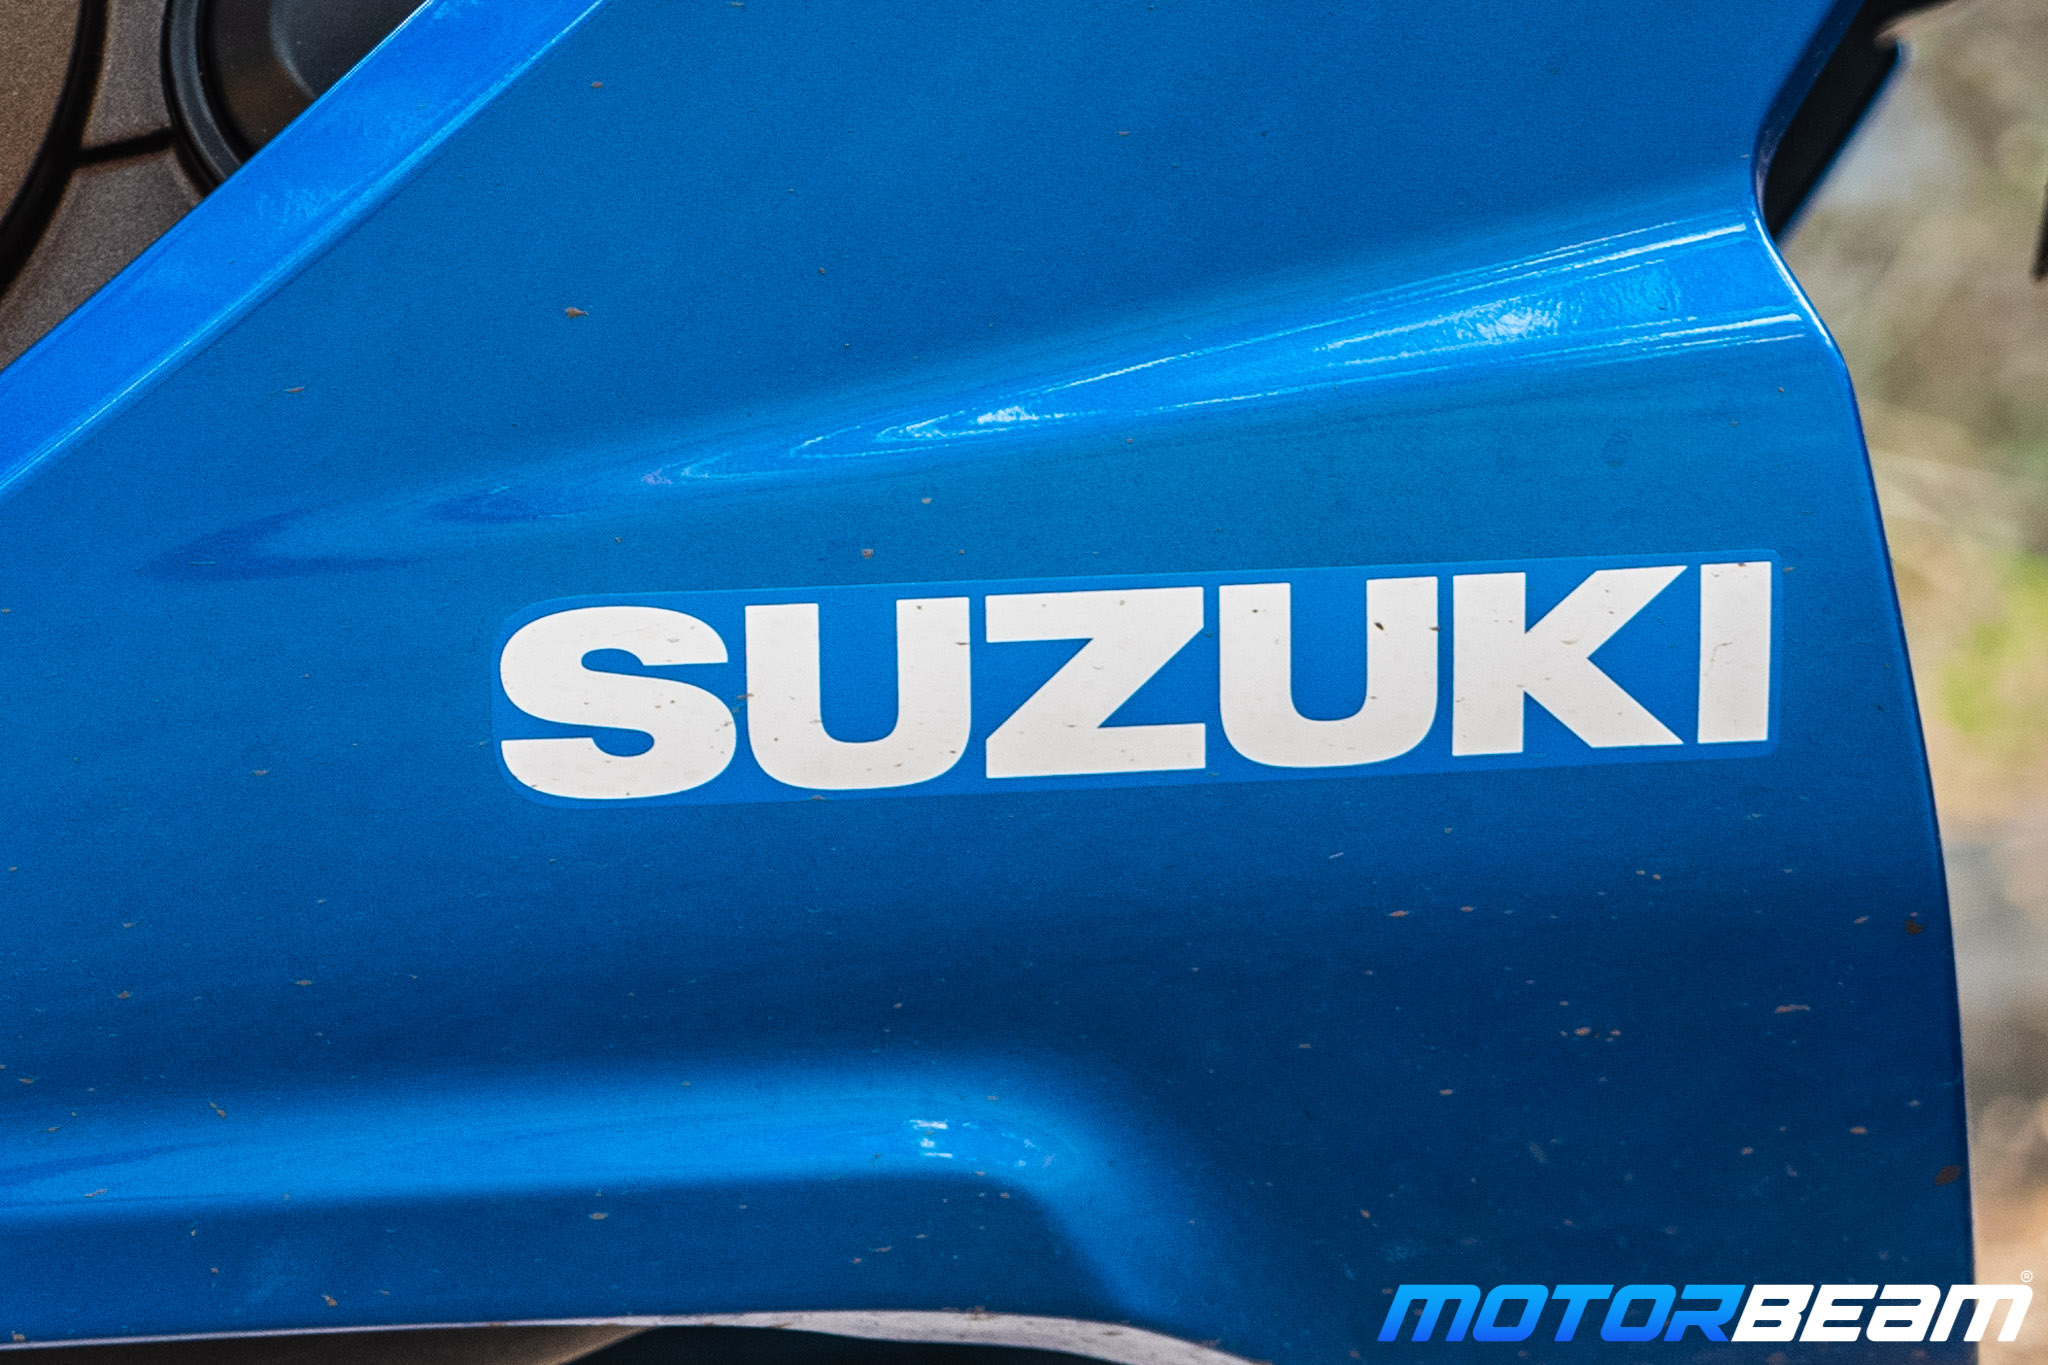 2020 Suzuki Gixxer SF 250 Review 26